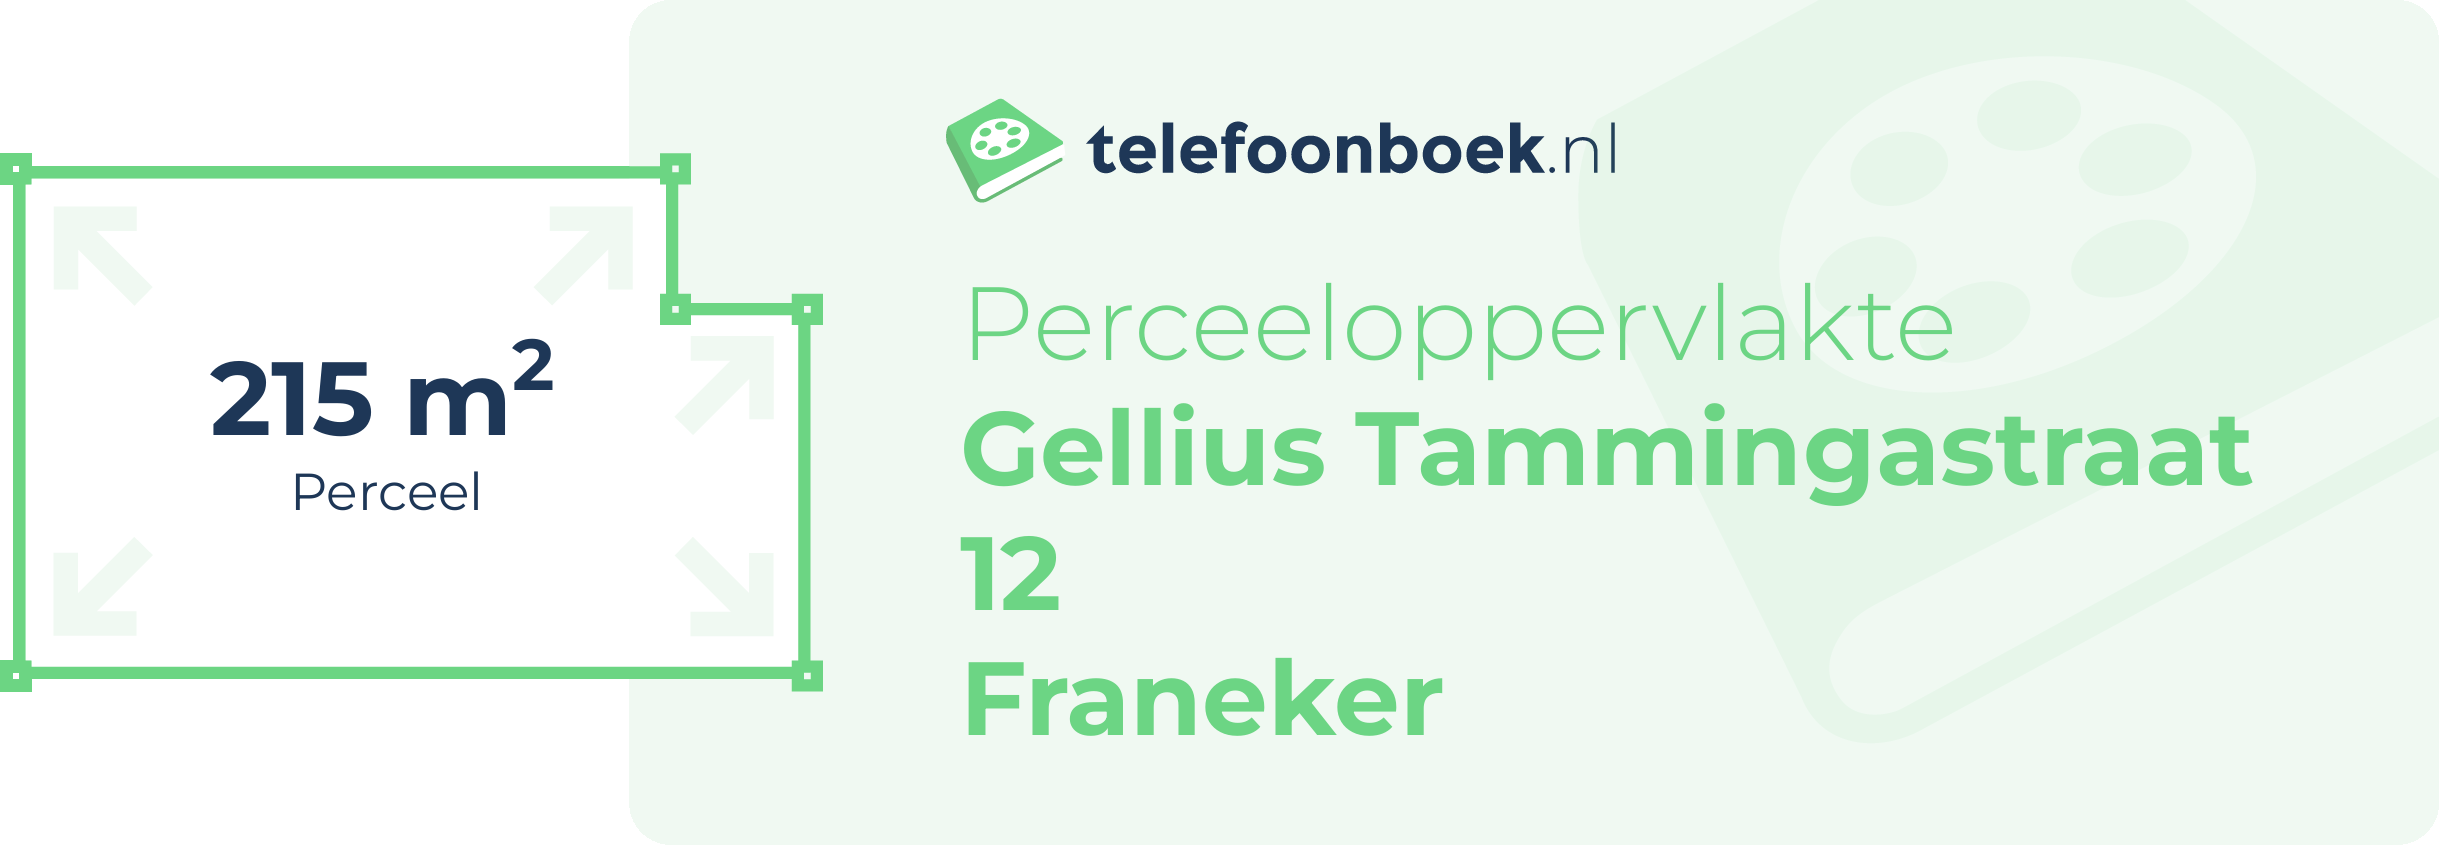 Perceeloppervlakte Gellius Tammingastraat 12 Franeker